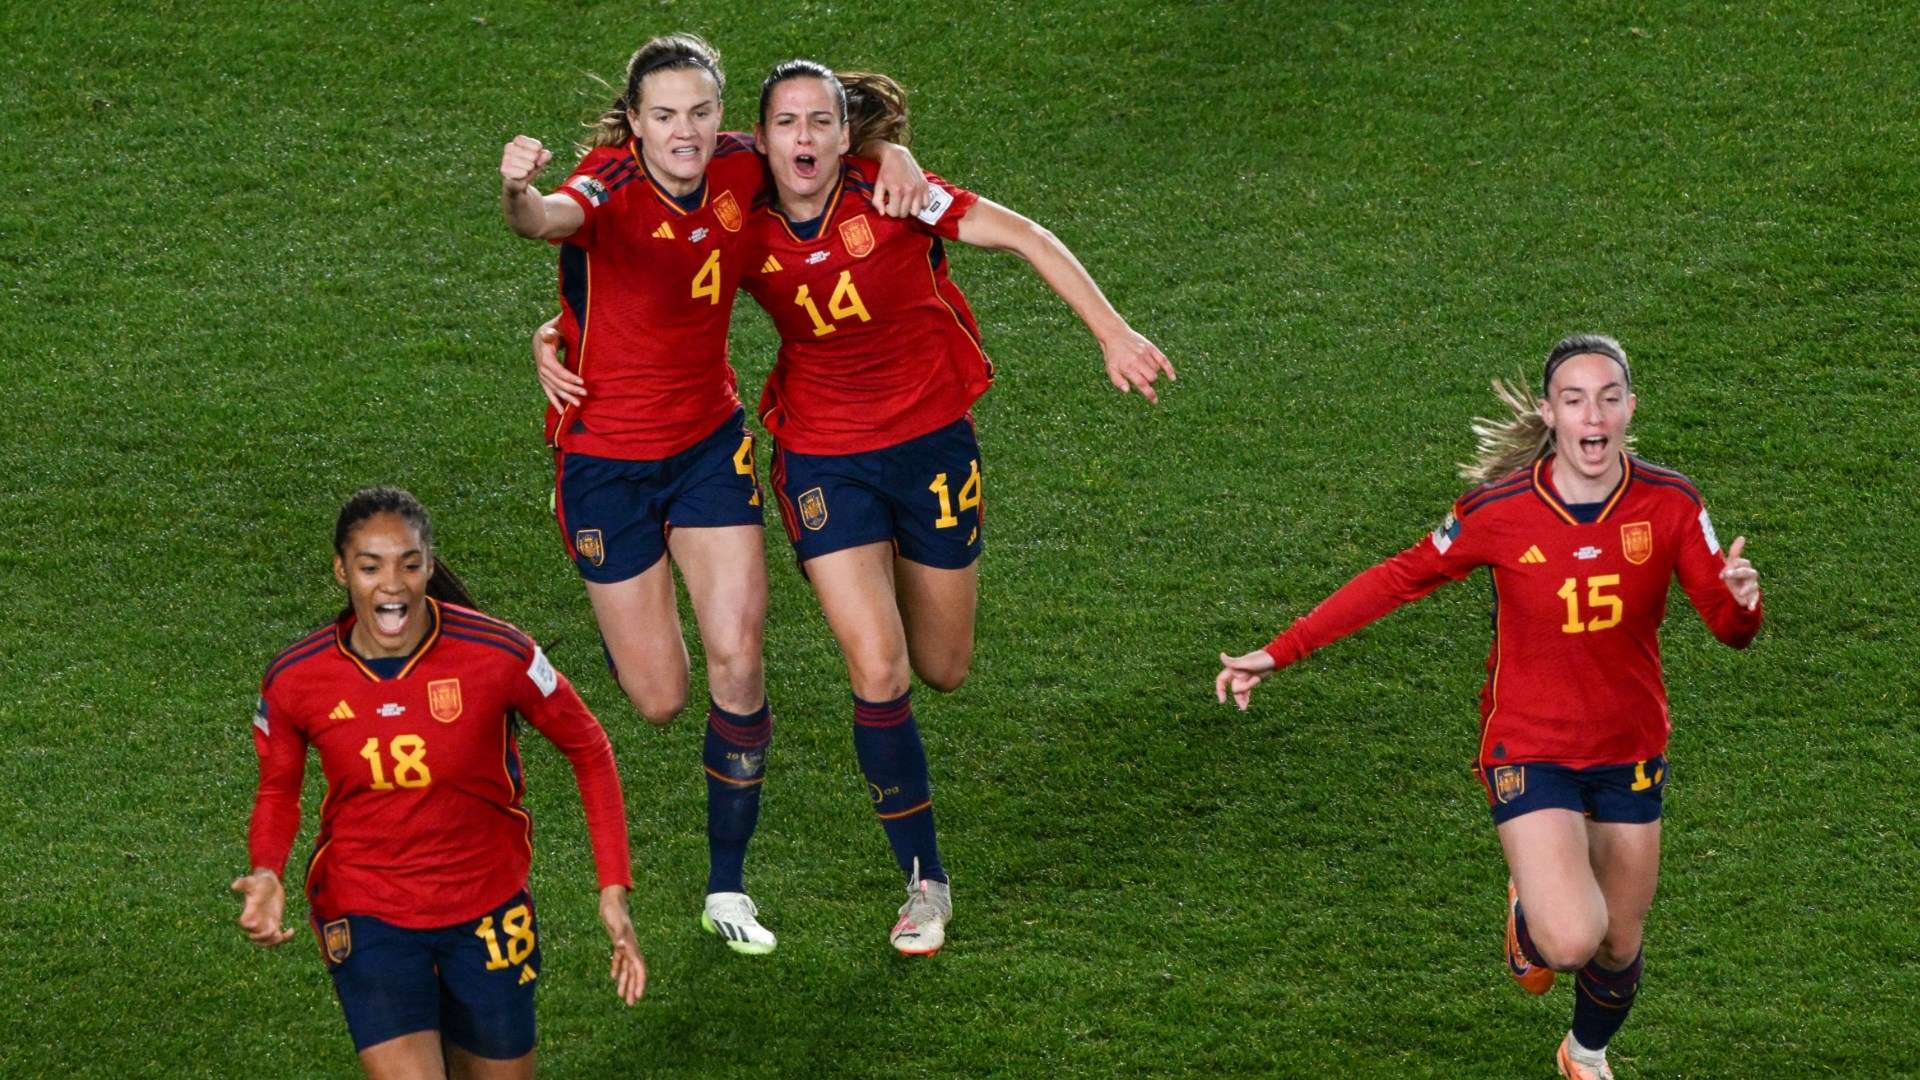 Spain celebrating Olga Carmona goal against Sweden Women's World Cup